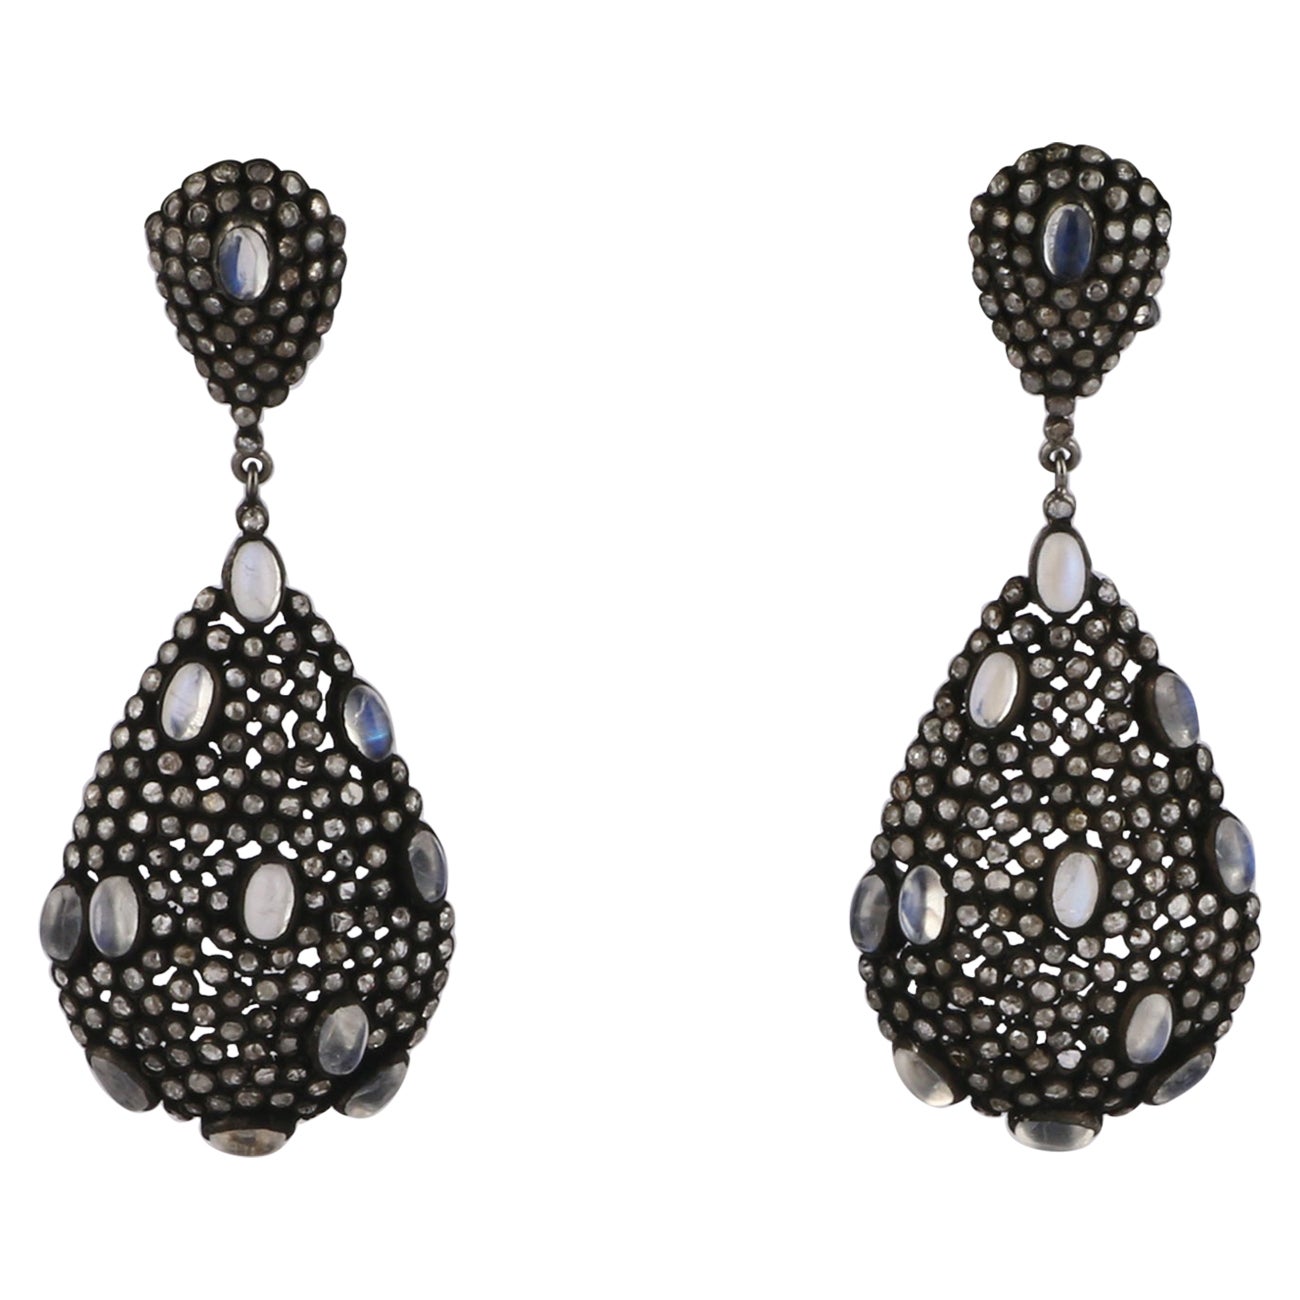 Viktorianische Hochzeits-Silber-Ohrringe im viktorianischen Stil mit Diamanten und blauen Mondsteinen